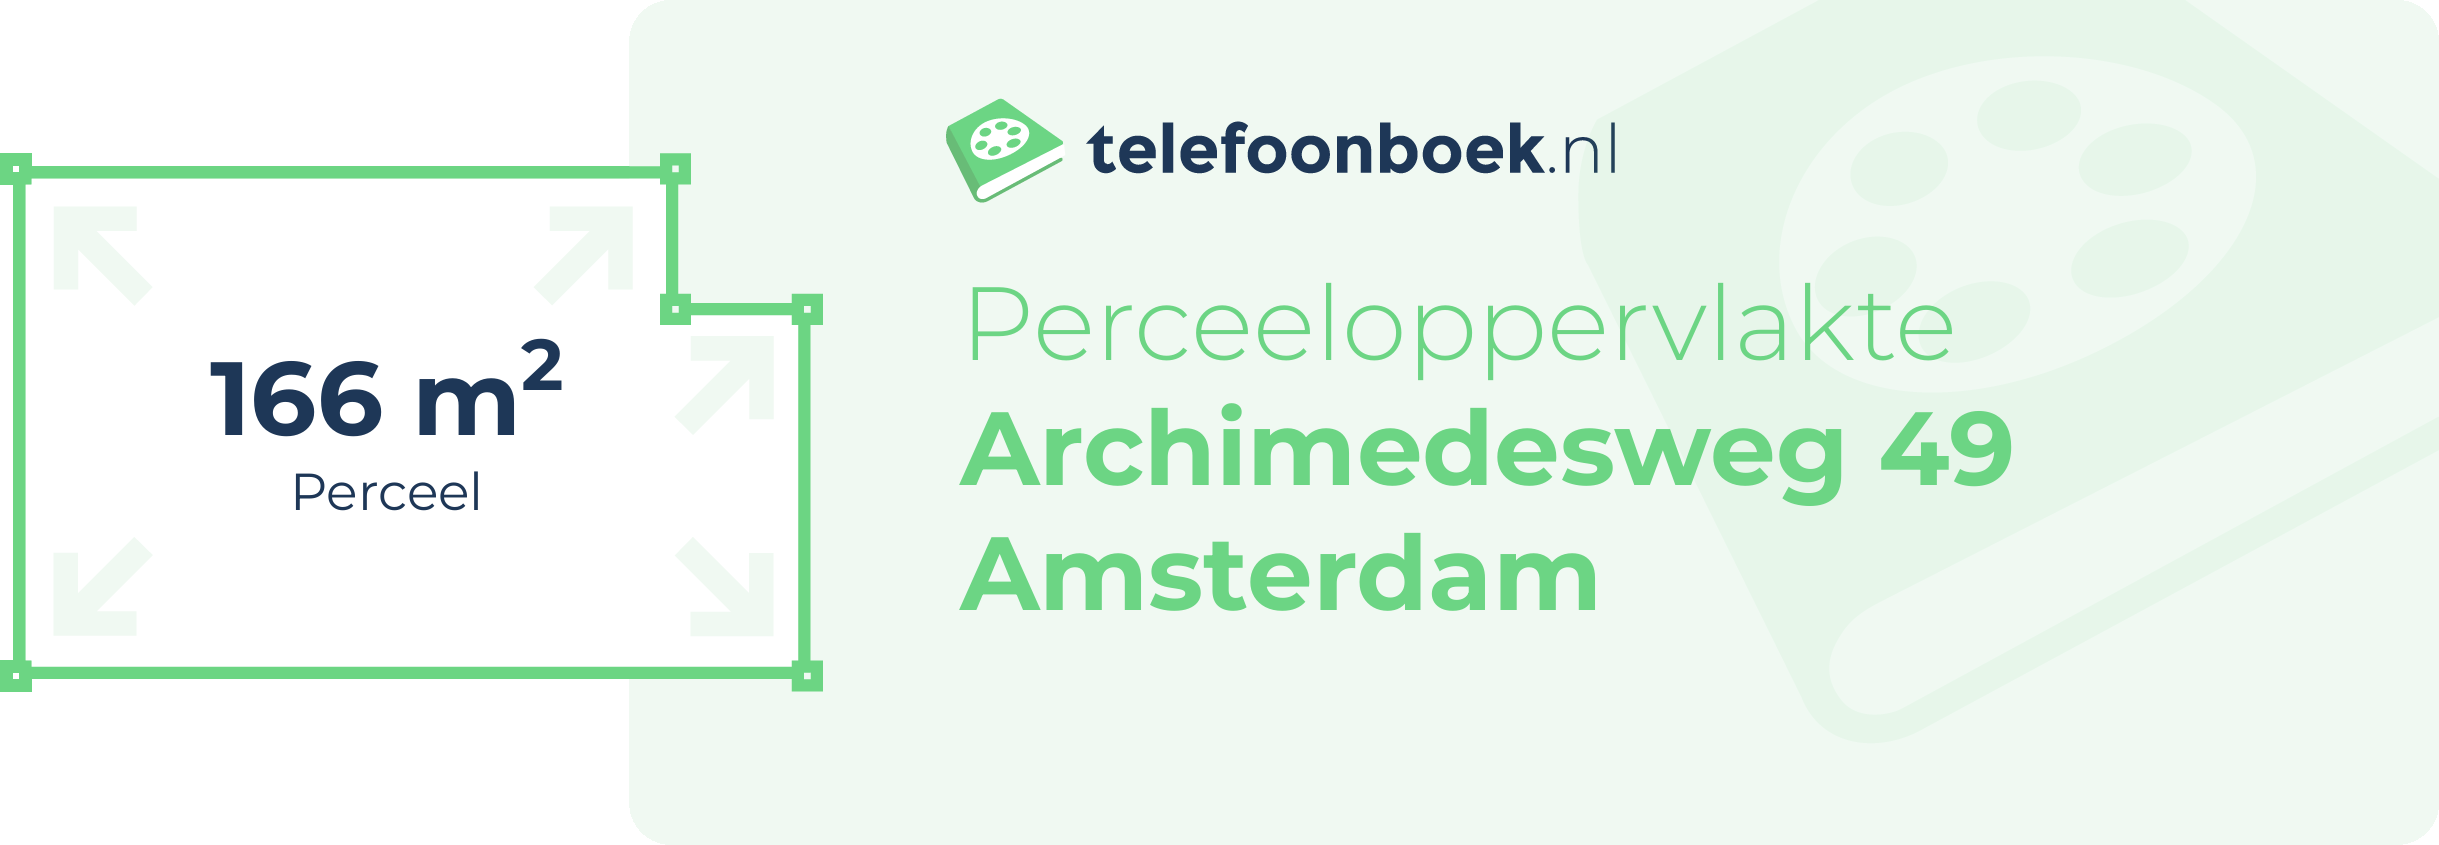 Perceeloppervlakte Archimedesweg 49 Amsterdam